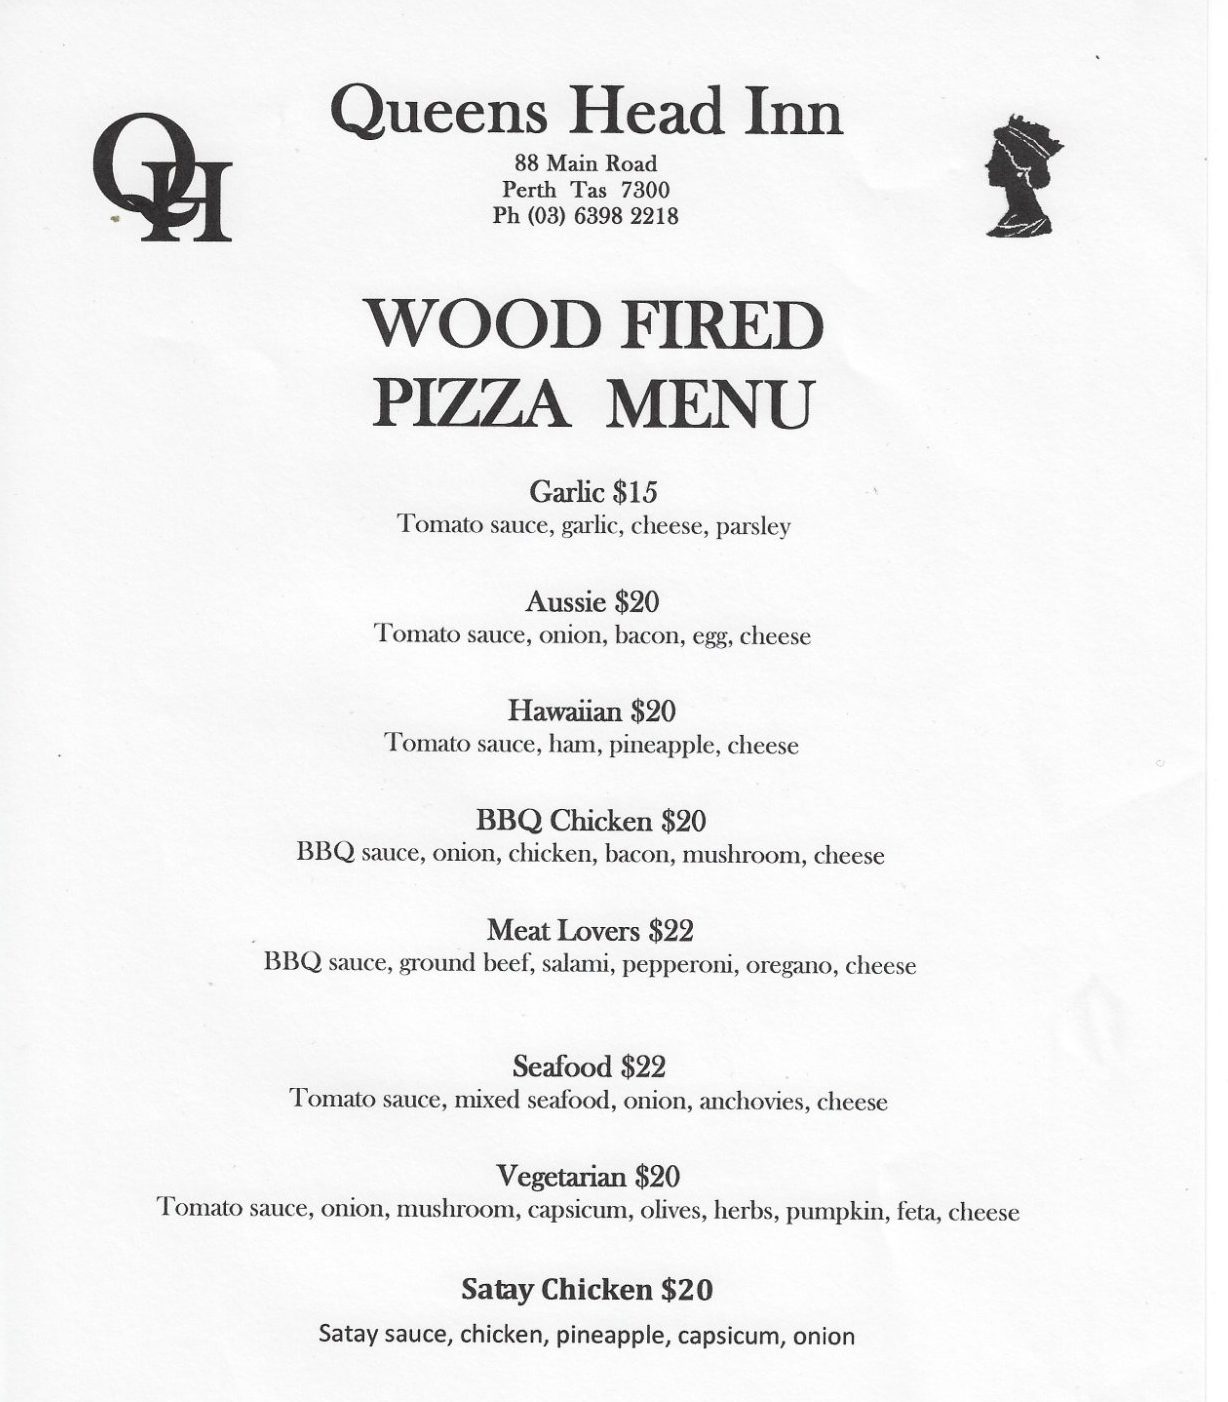 Queens Head Inn Pizza Menu 